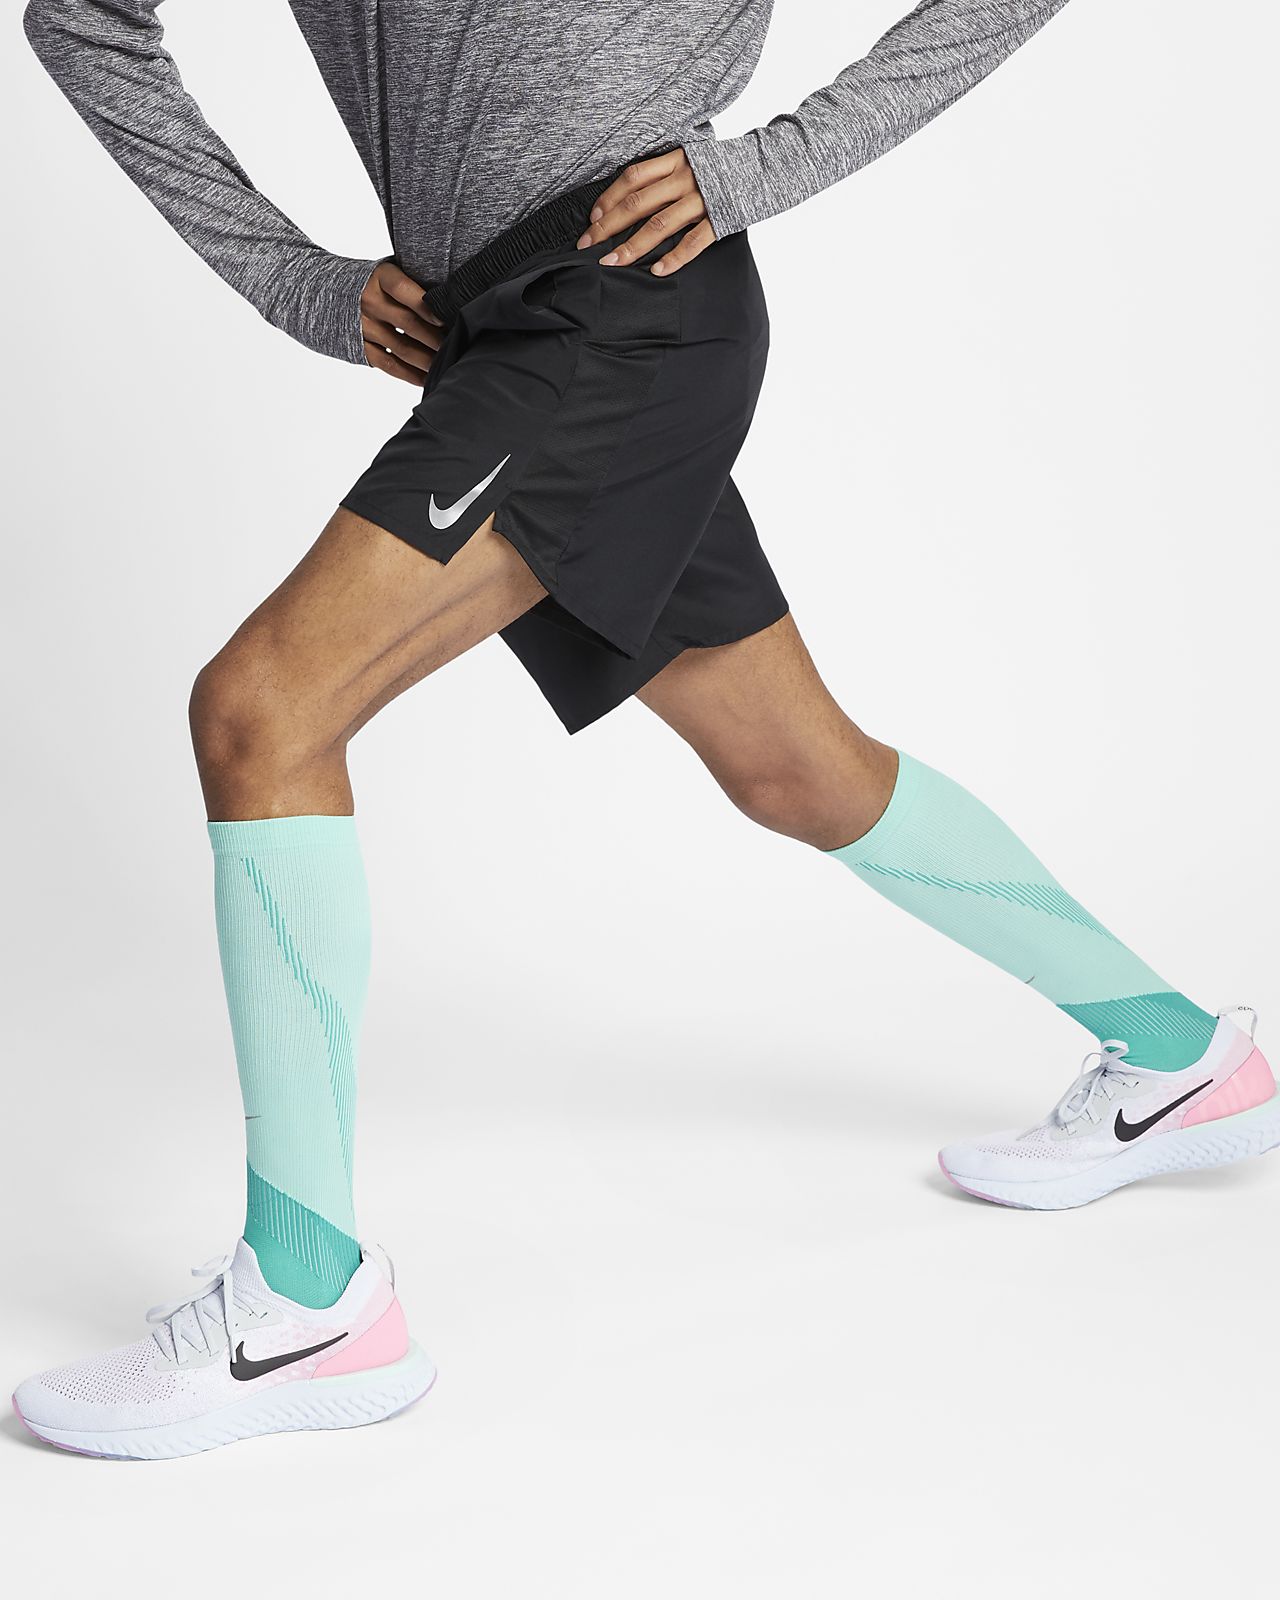 18cm Lined Running Shorts. Nike BG